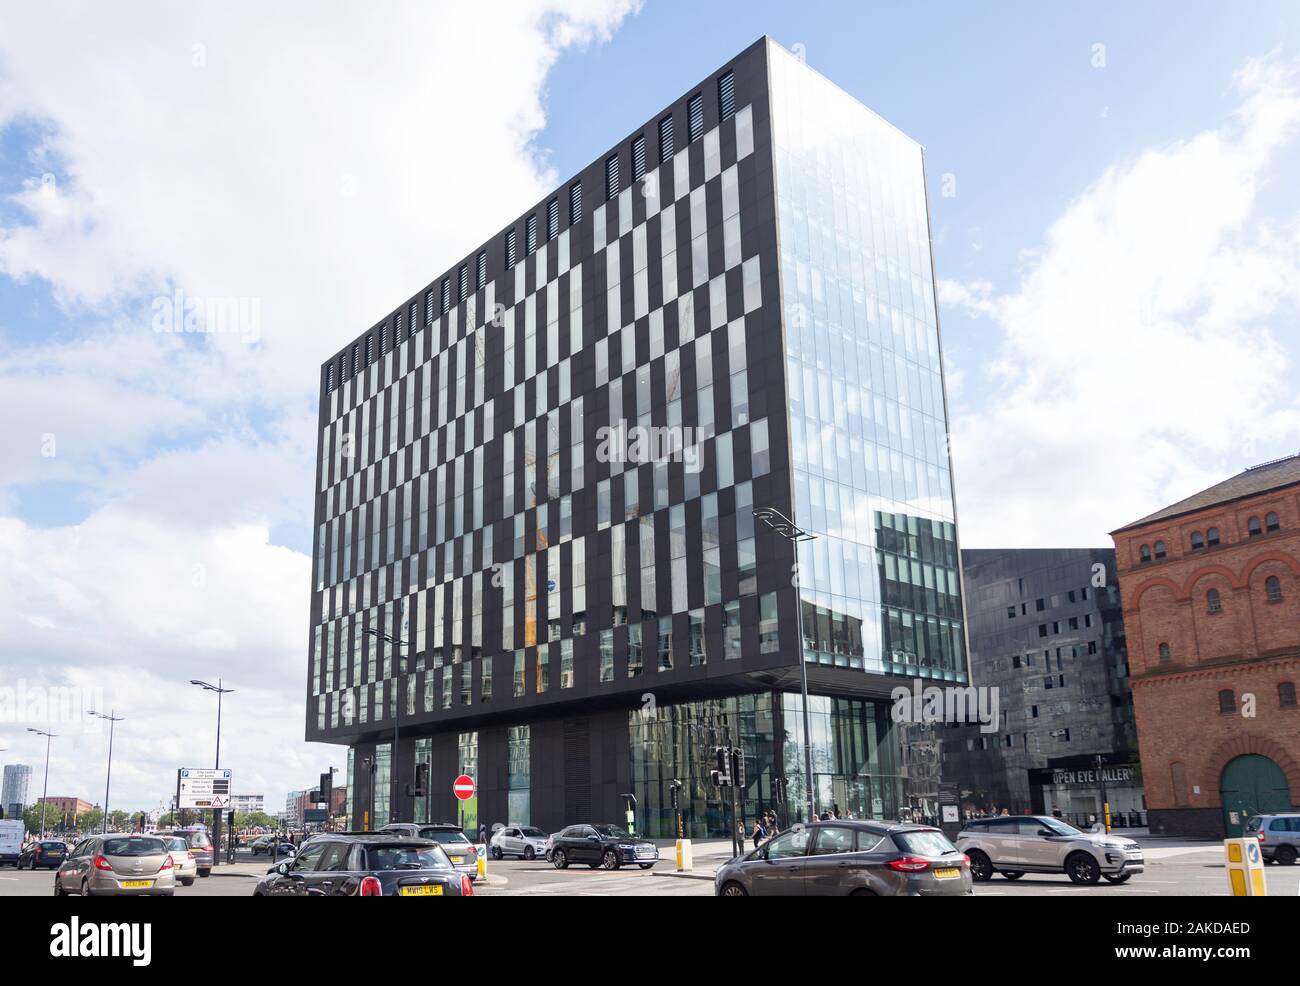 N°1 immeuble de bureaux de l'île de Mann, Canning Dock, Liverpool, Merseyside, England, United Kingdom Banque D'Images